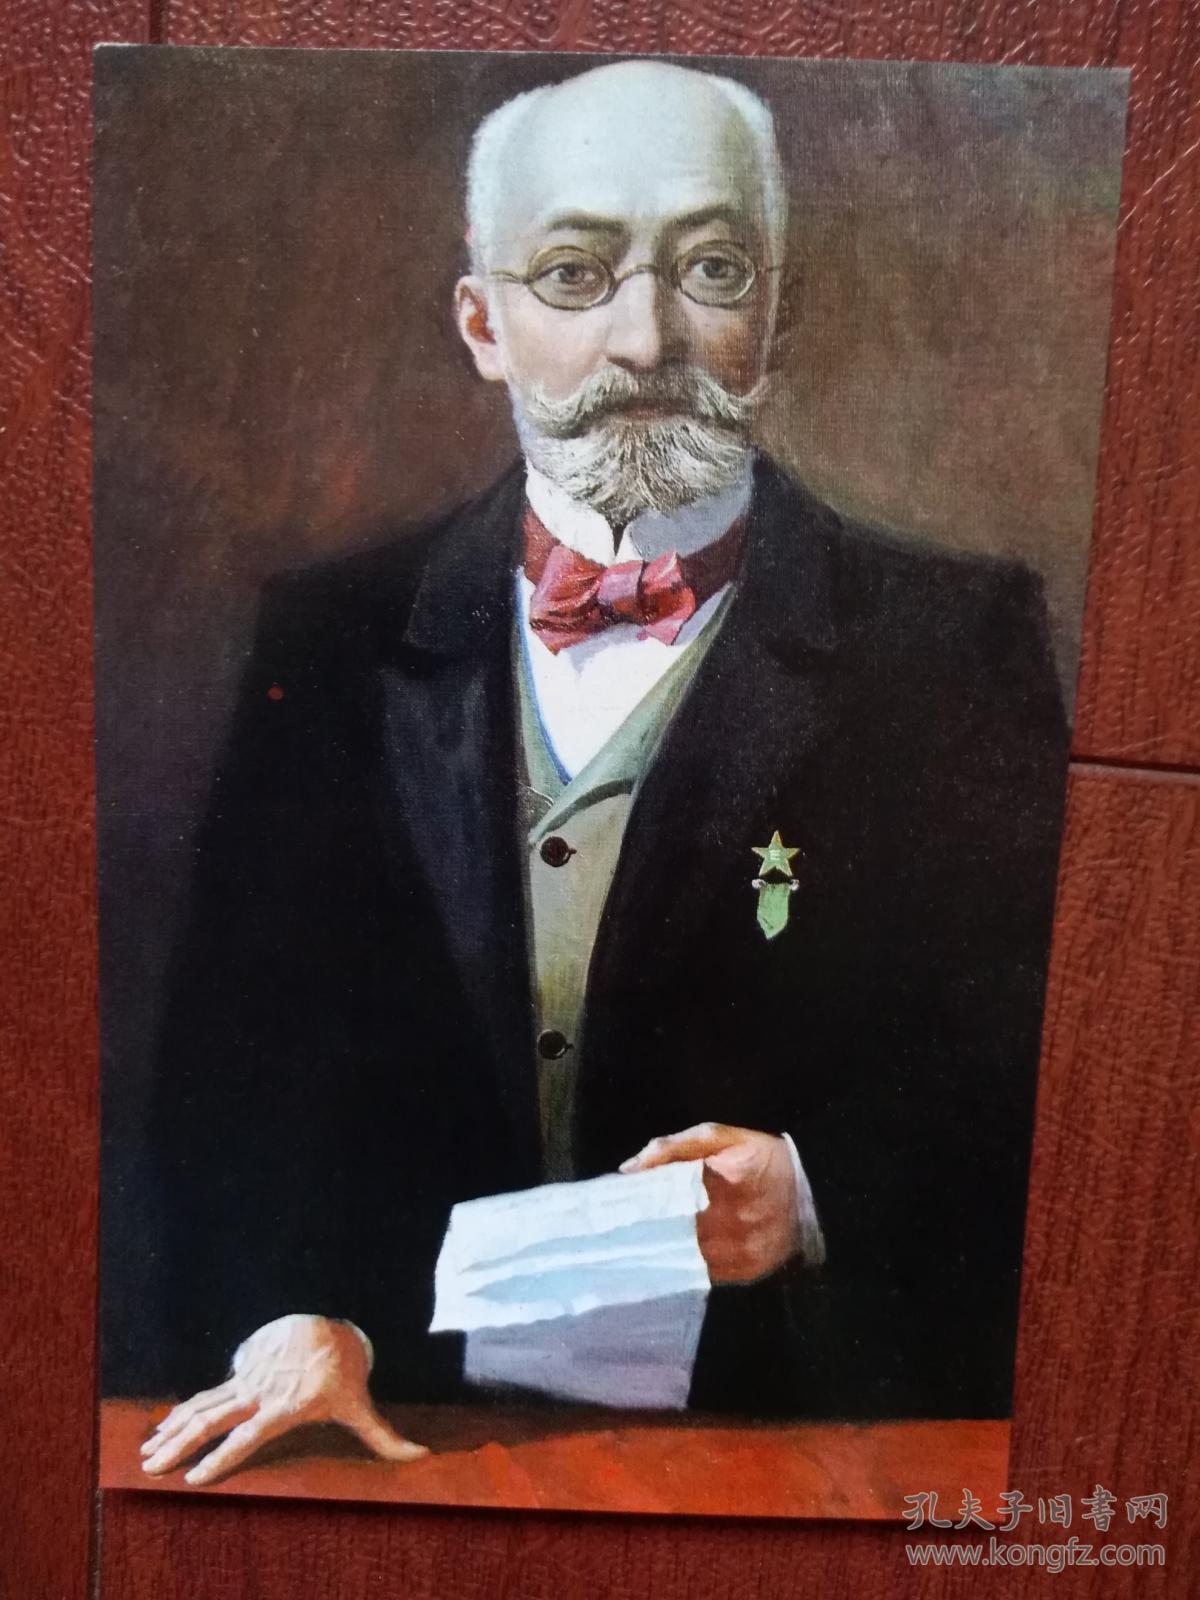 世界语创始人柴门霍夫明信片,世界语,(空白未用